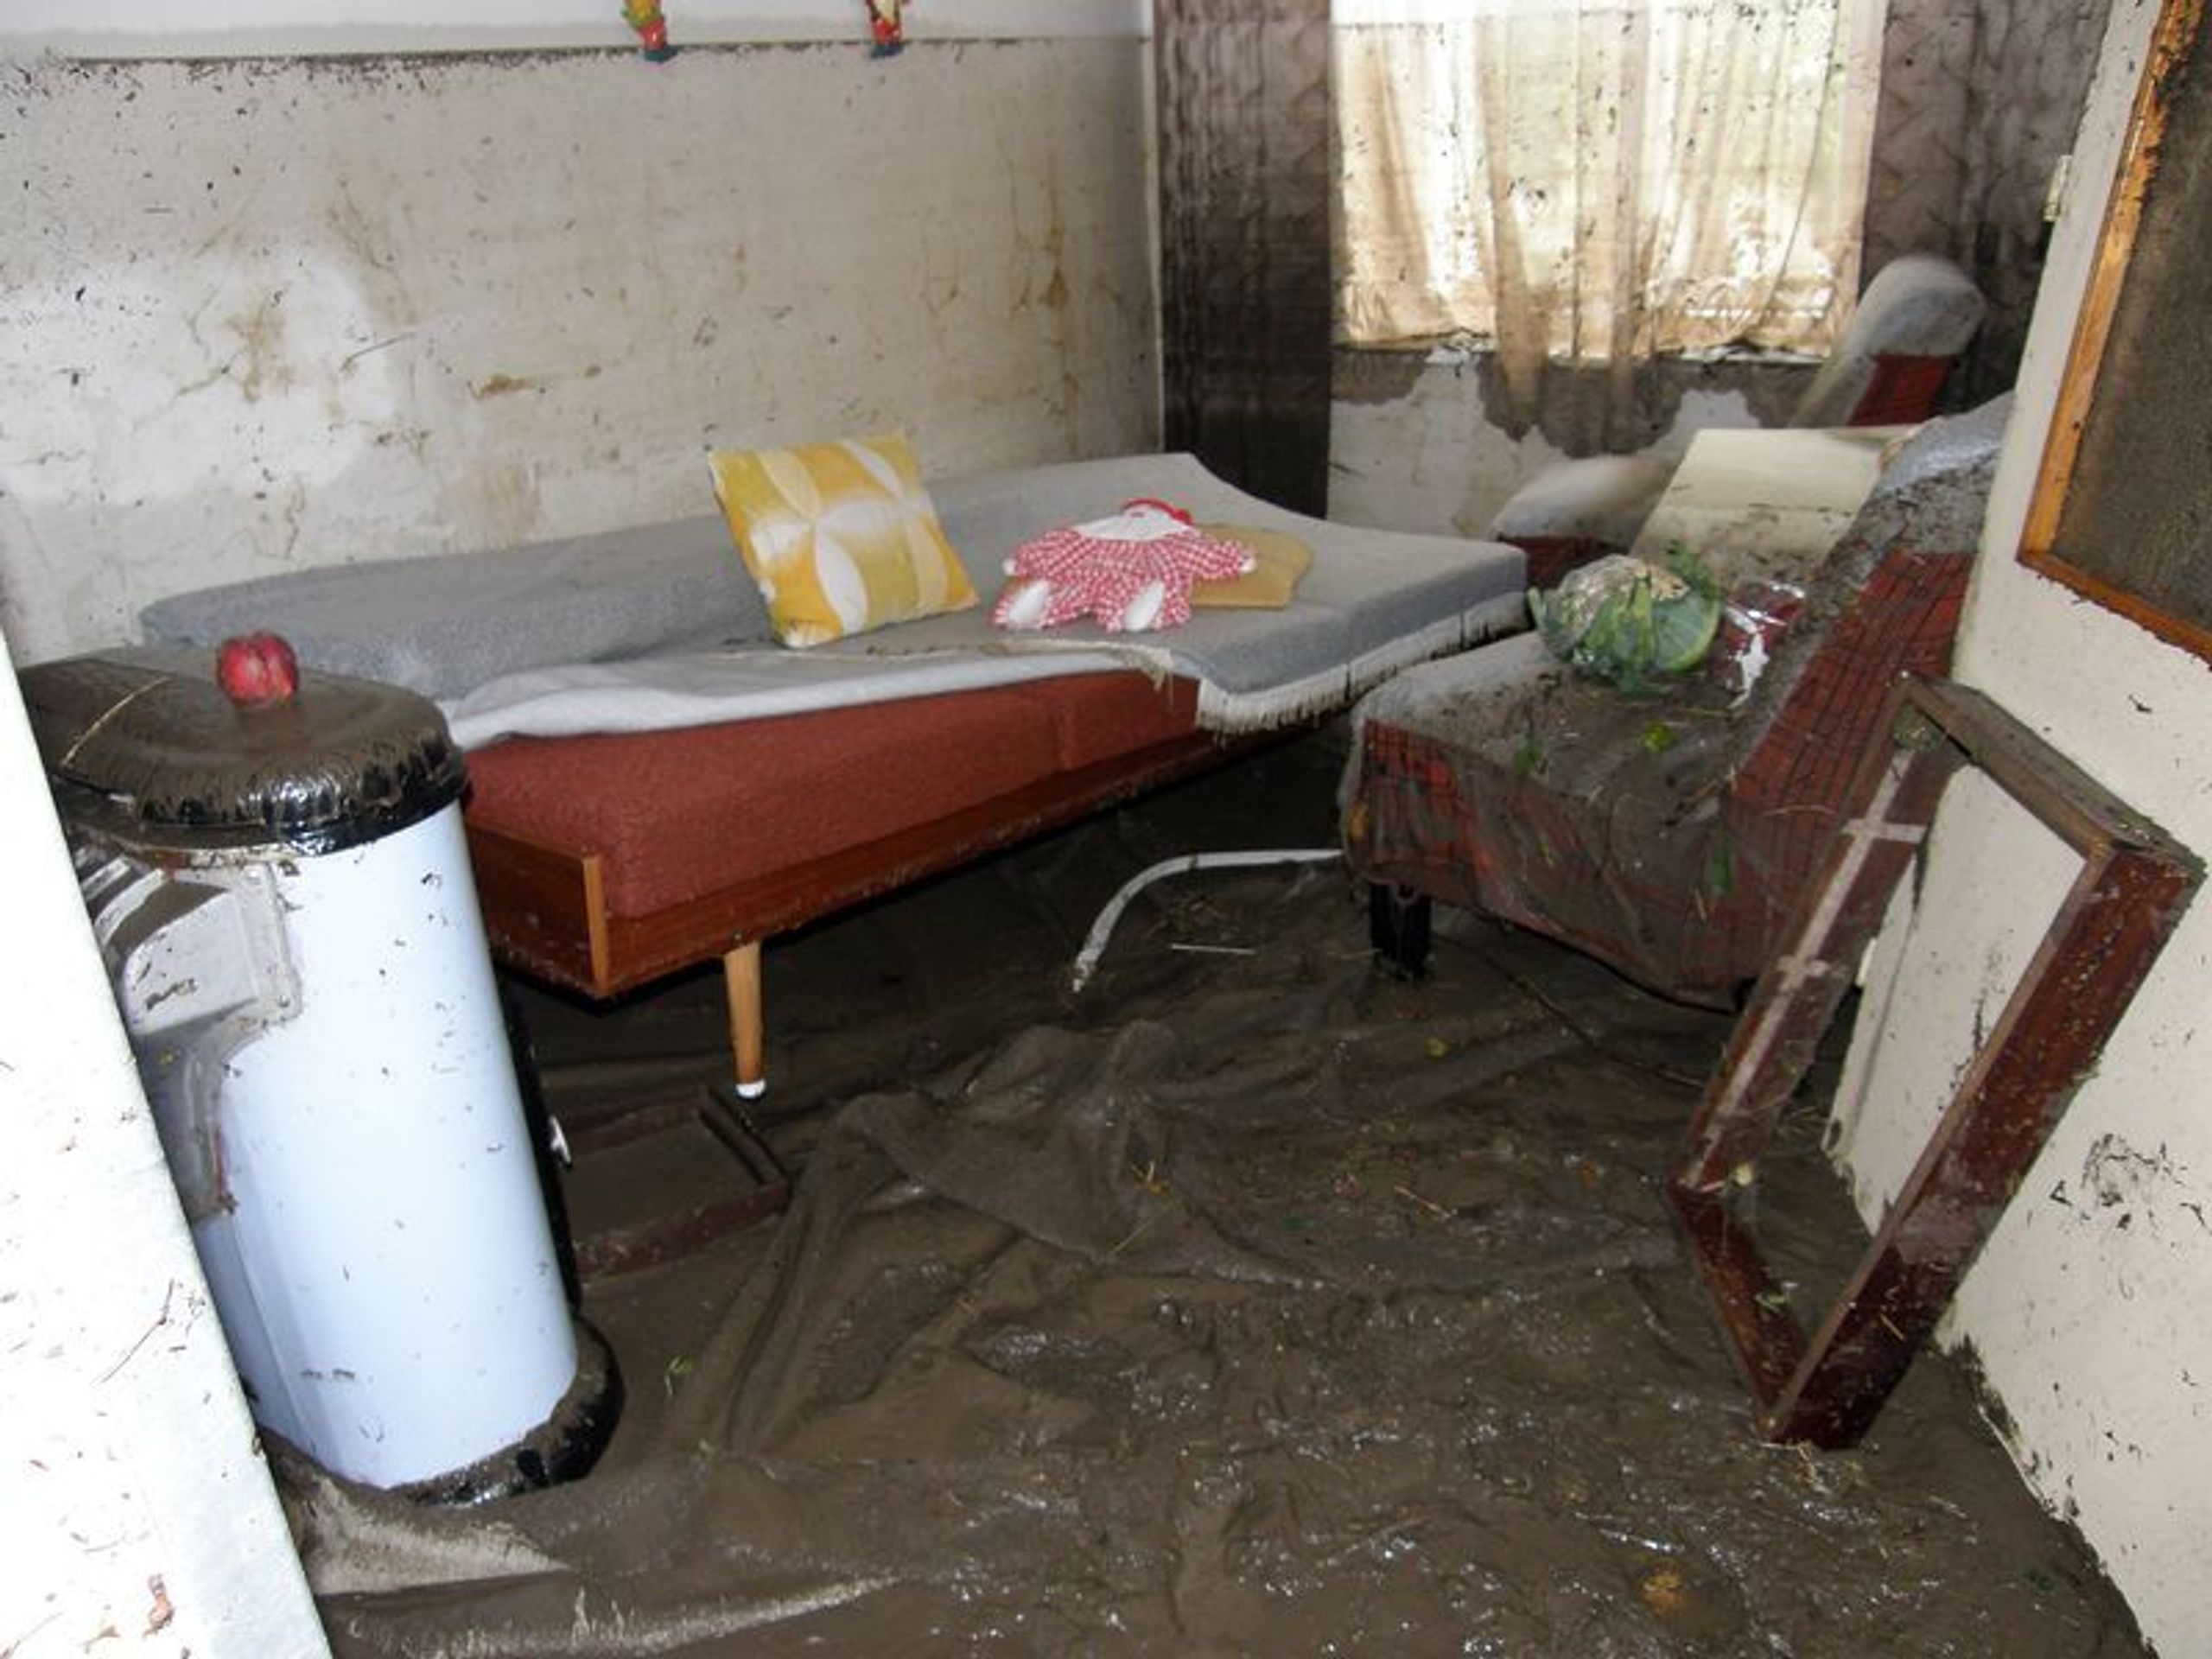 Voda zničila majetek lidí - GALERIE: Odstraňování následků povodní v Novém Jičíně Žilině (7/7)